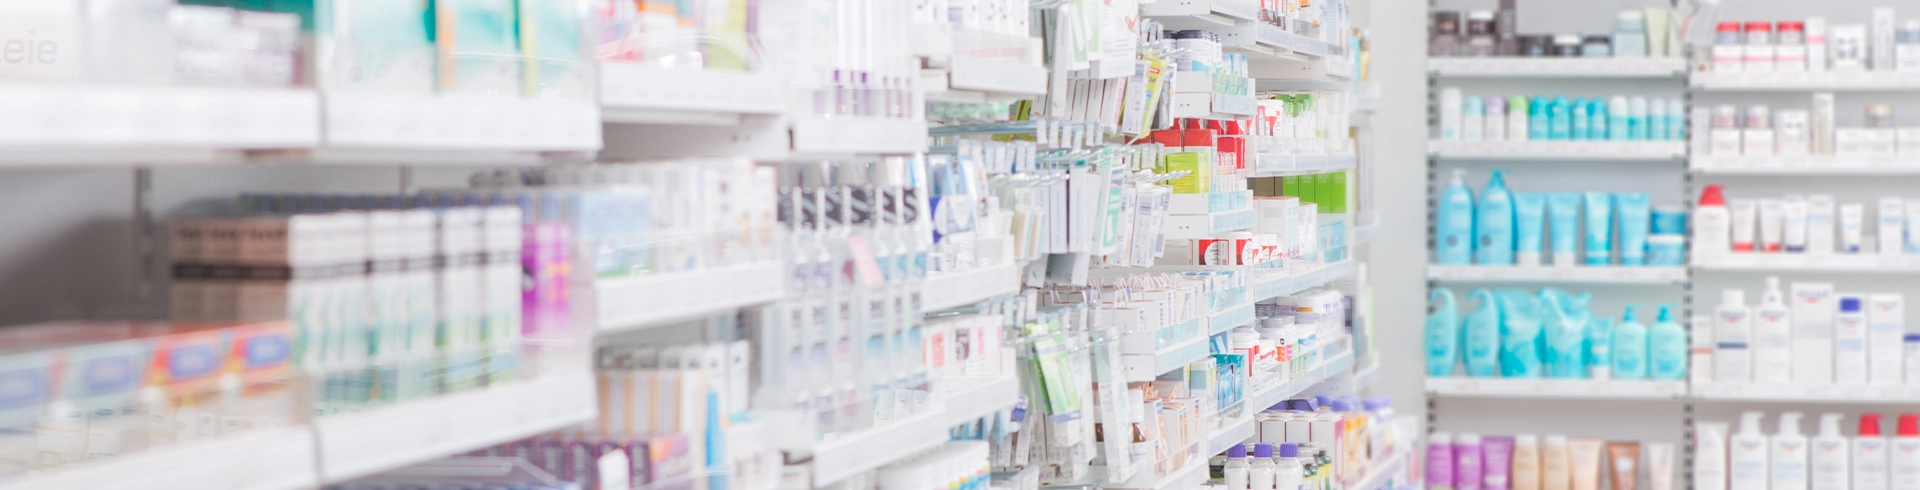 shelves inside pharmacy